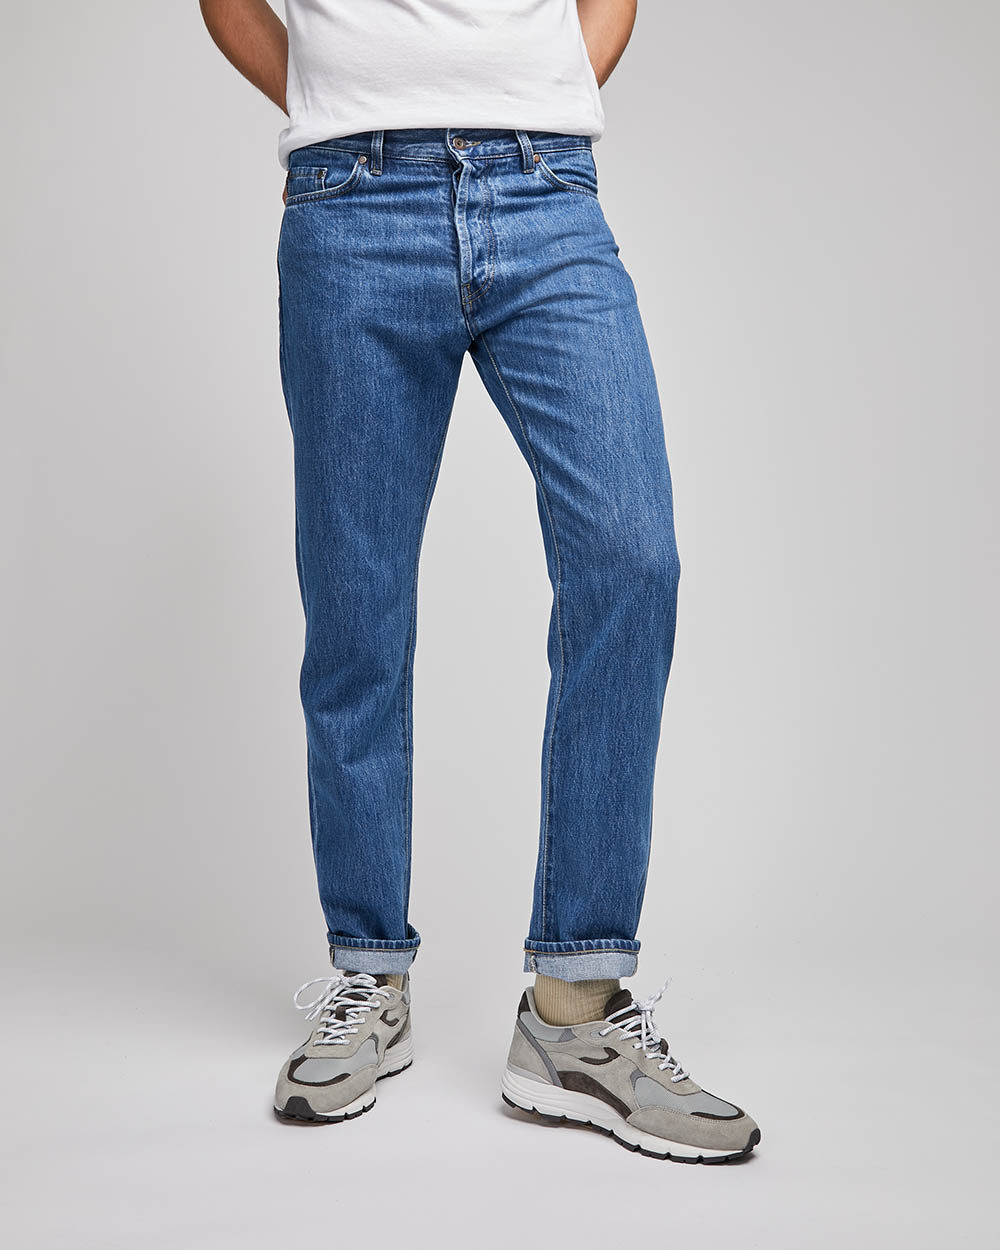 Pantalons et jeans pour homme – Page 2 – LES CINQ FRÈRES